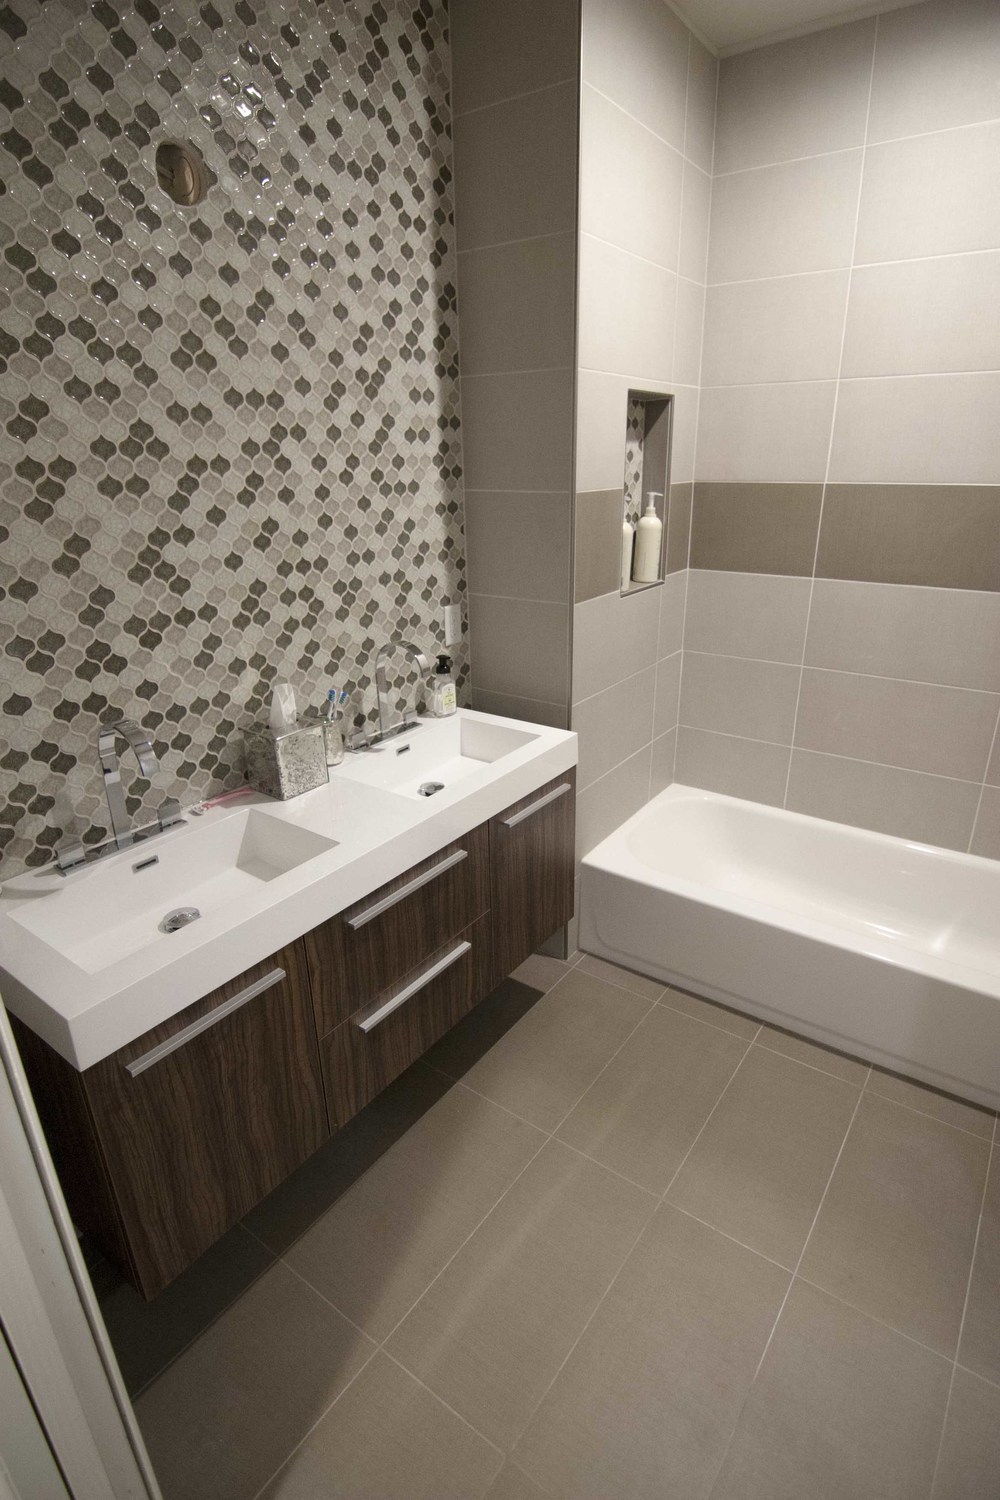 img/bathroom-tile-designs-simple.jpg